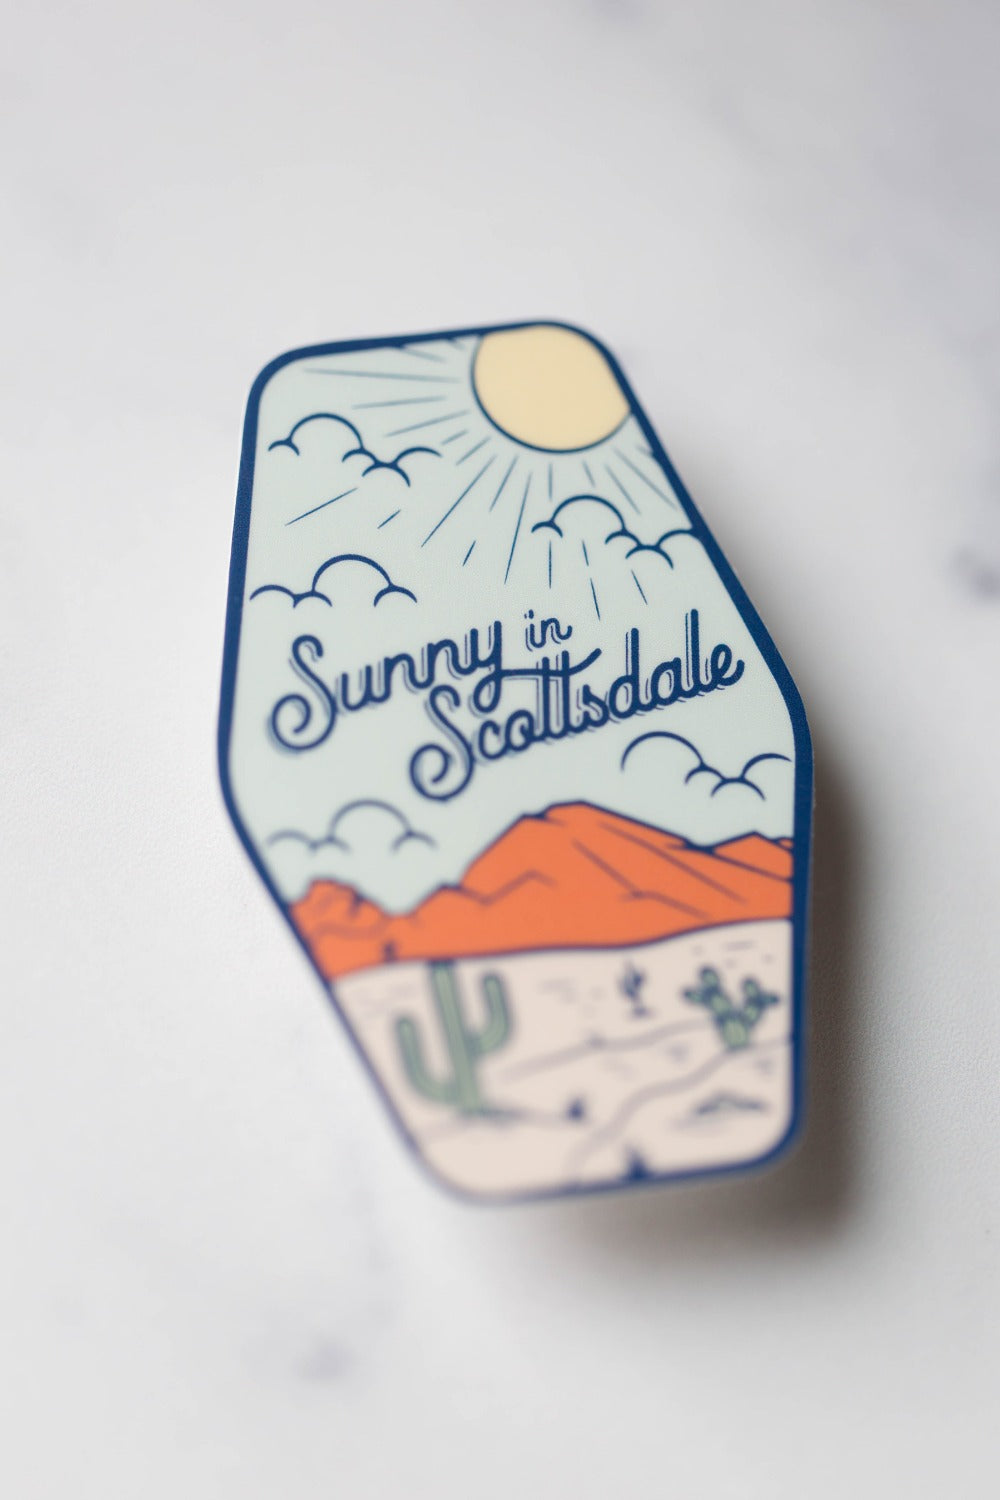 Sunny in Scottsdale Vinyl Sticker